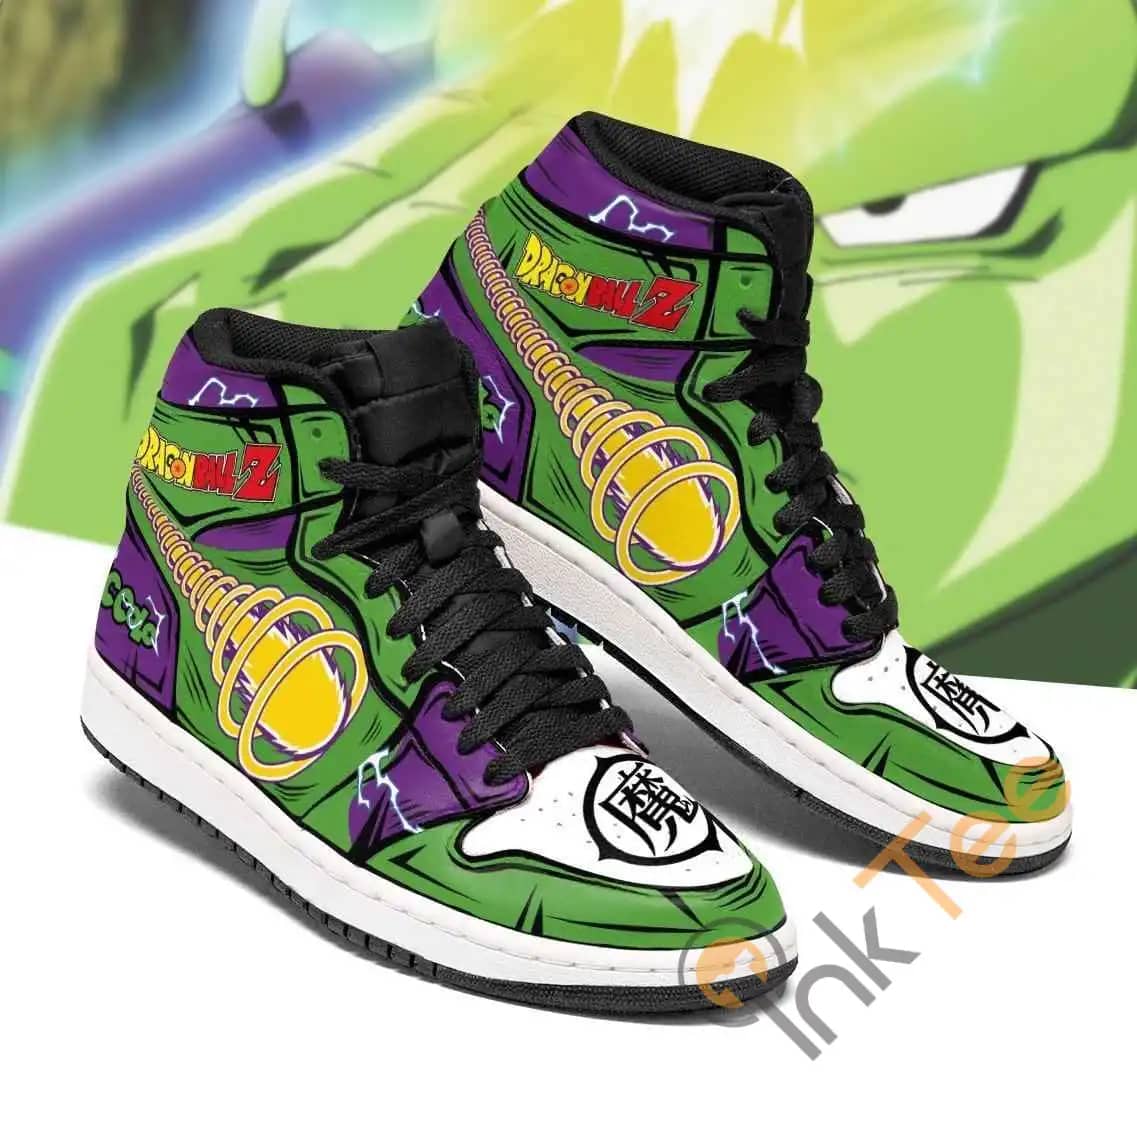 Piccolo Dragon Ball Z Anime Sneakers Air Jordan Shoes